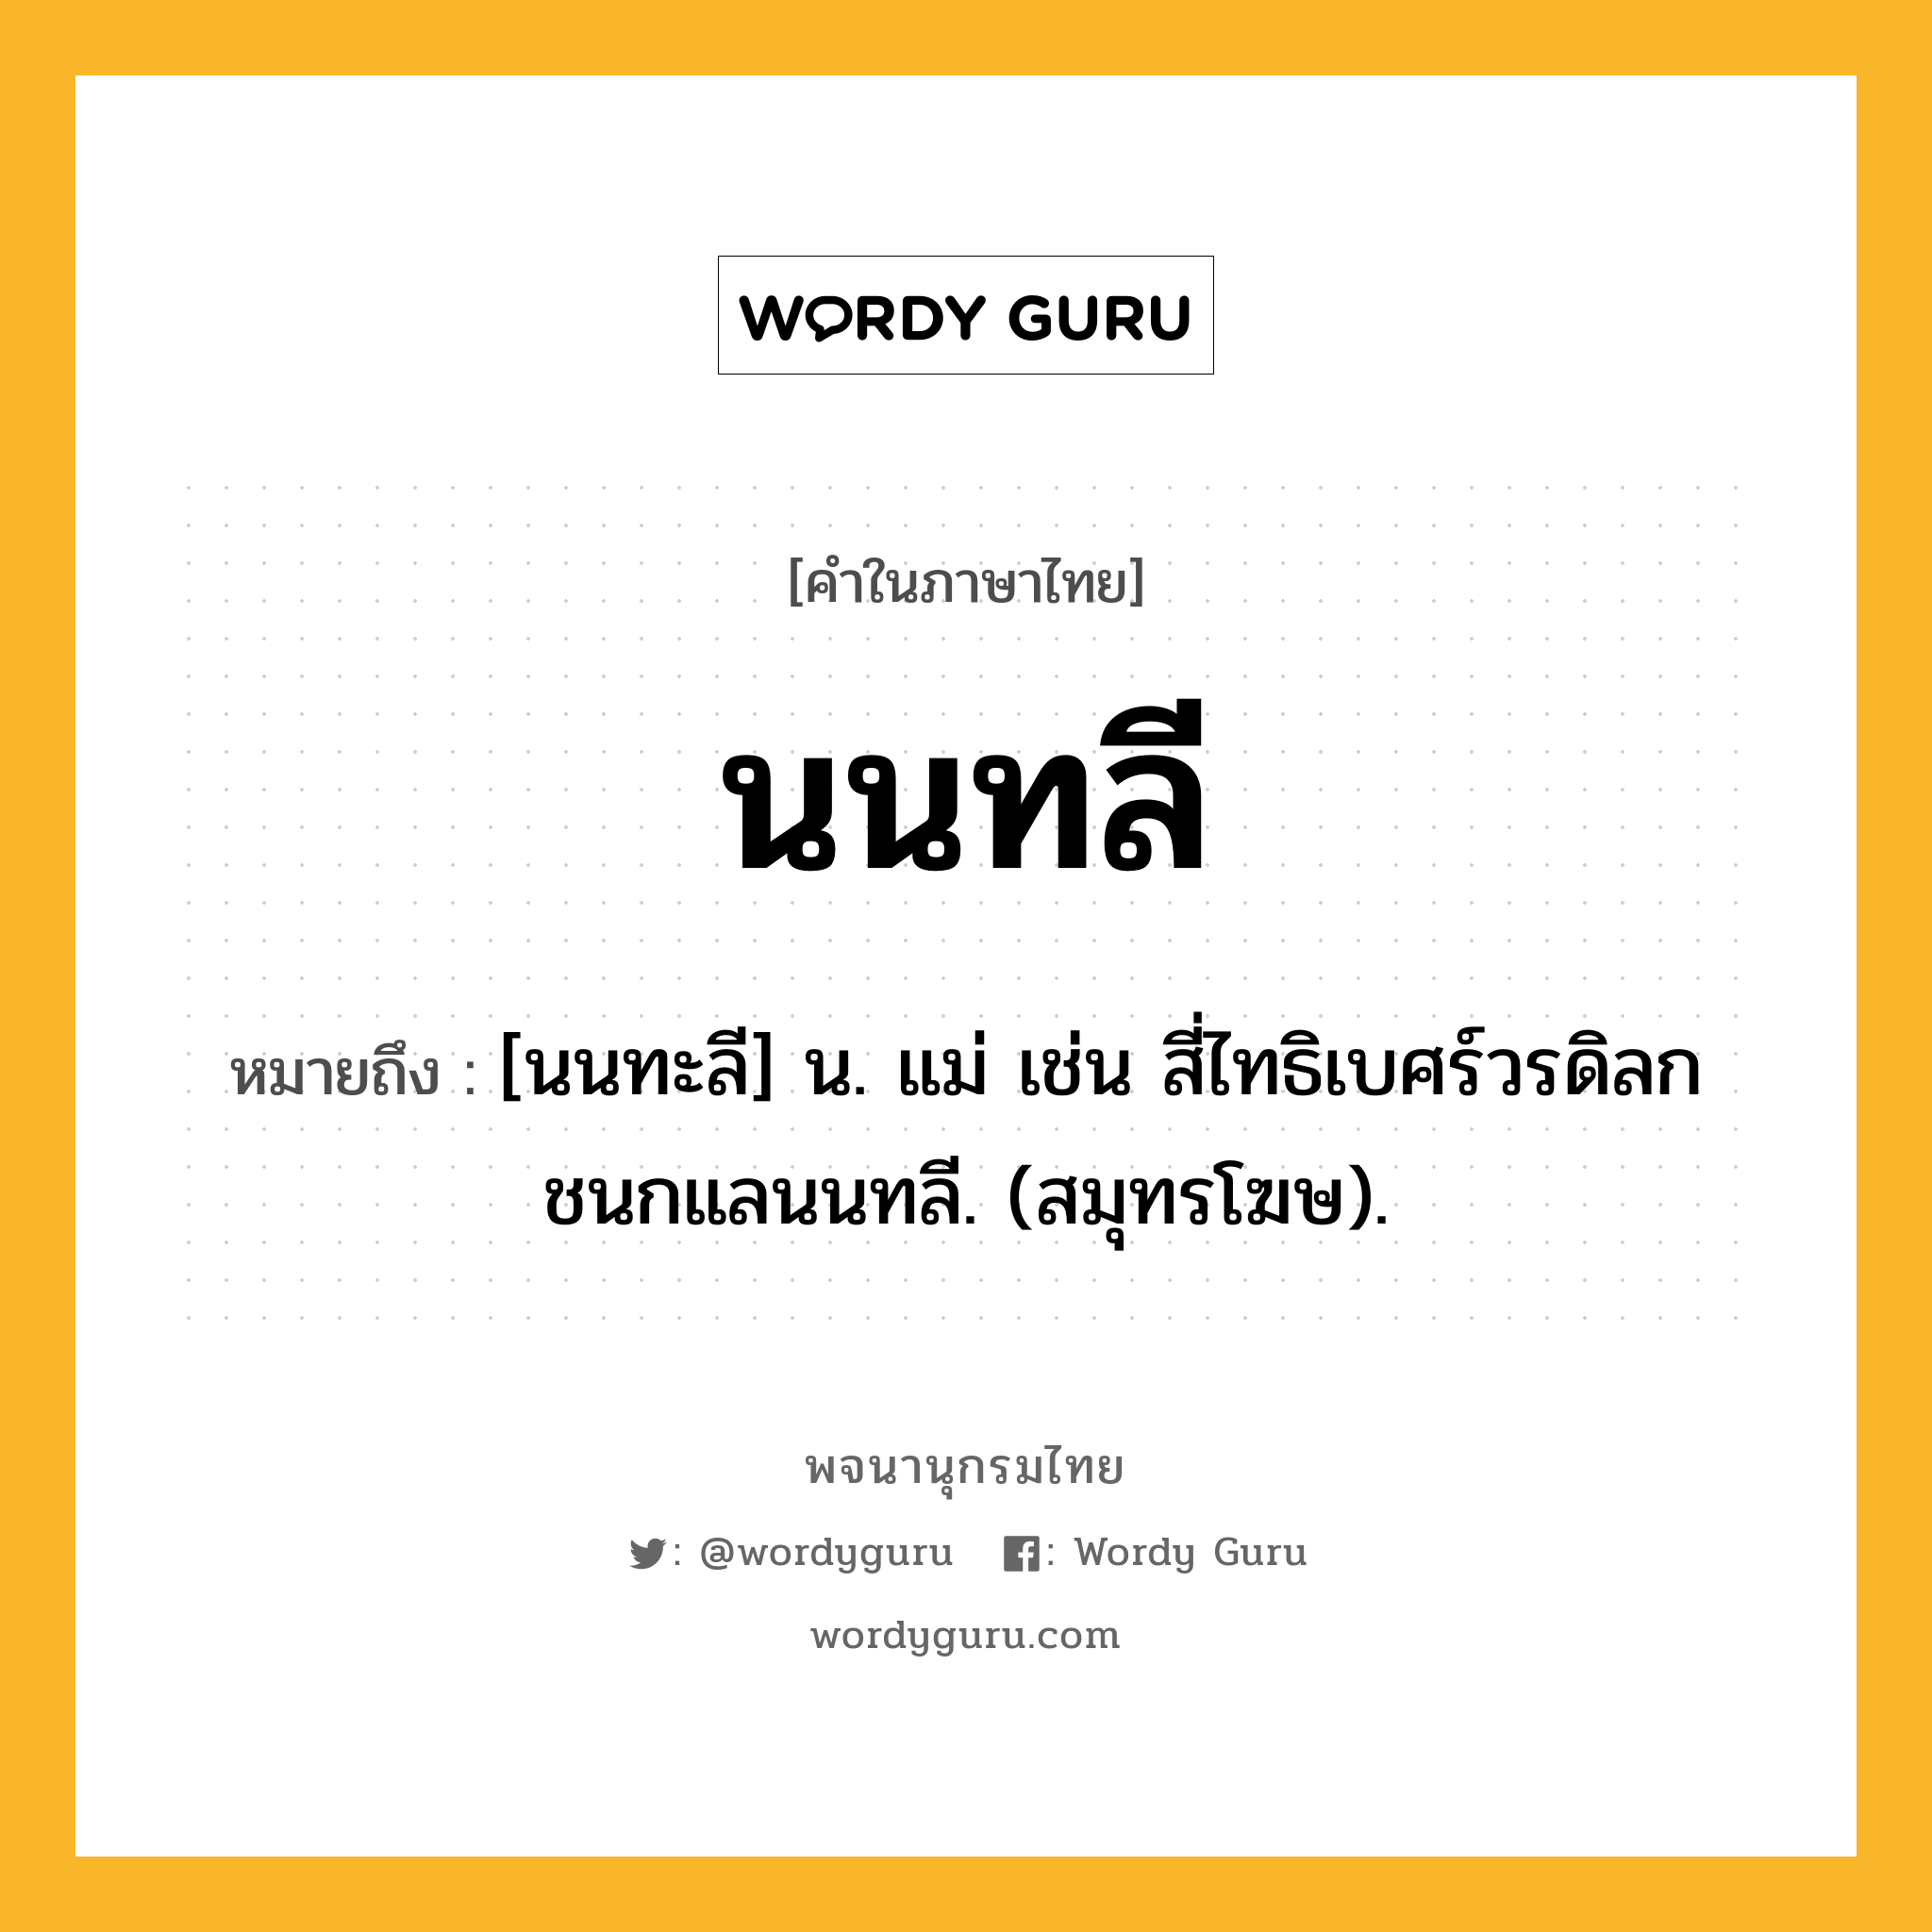 นนทลี ความหมาย หมายถึงอะไร?, คำในภาษาไทย นนทลี หมายถึง [นนทะลี] น. แม่ เช่น สี่ไทธิเบศร์วรดิลก ชนกแลนนทลี. (สมุทรโฆษ).